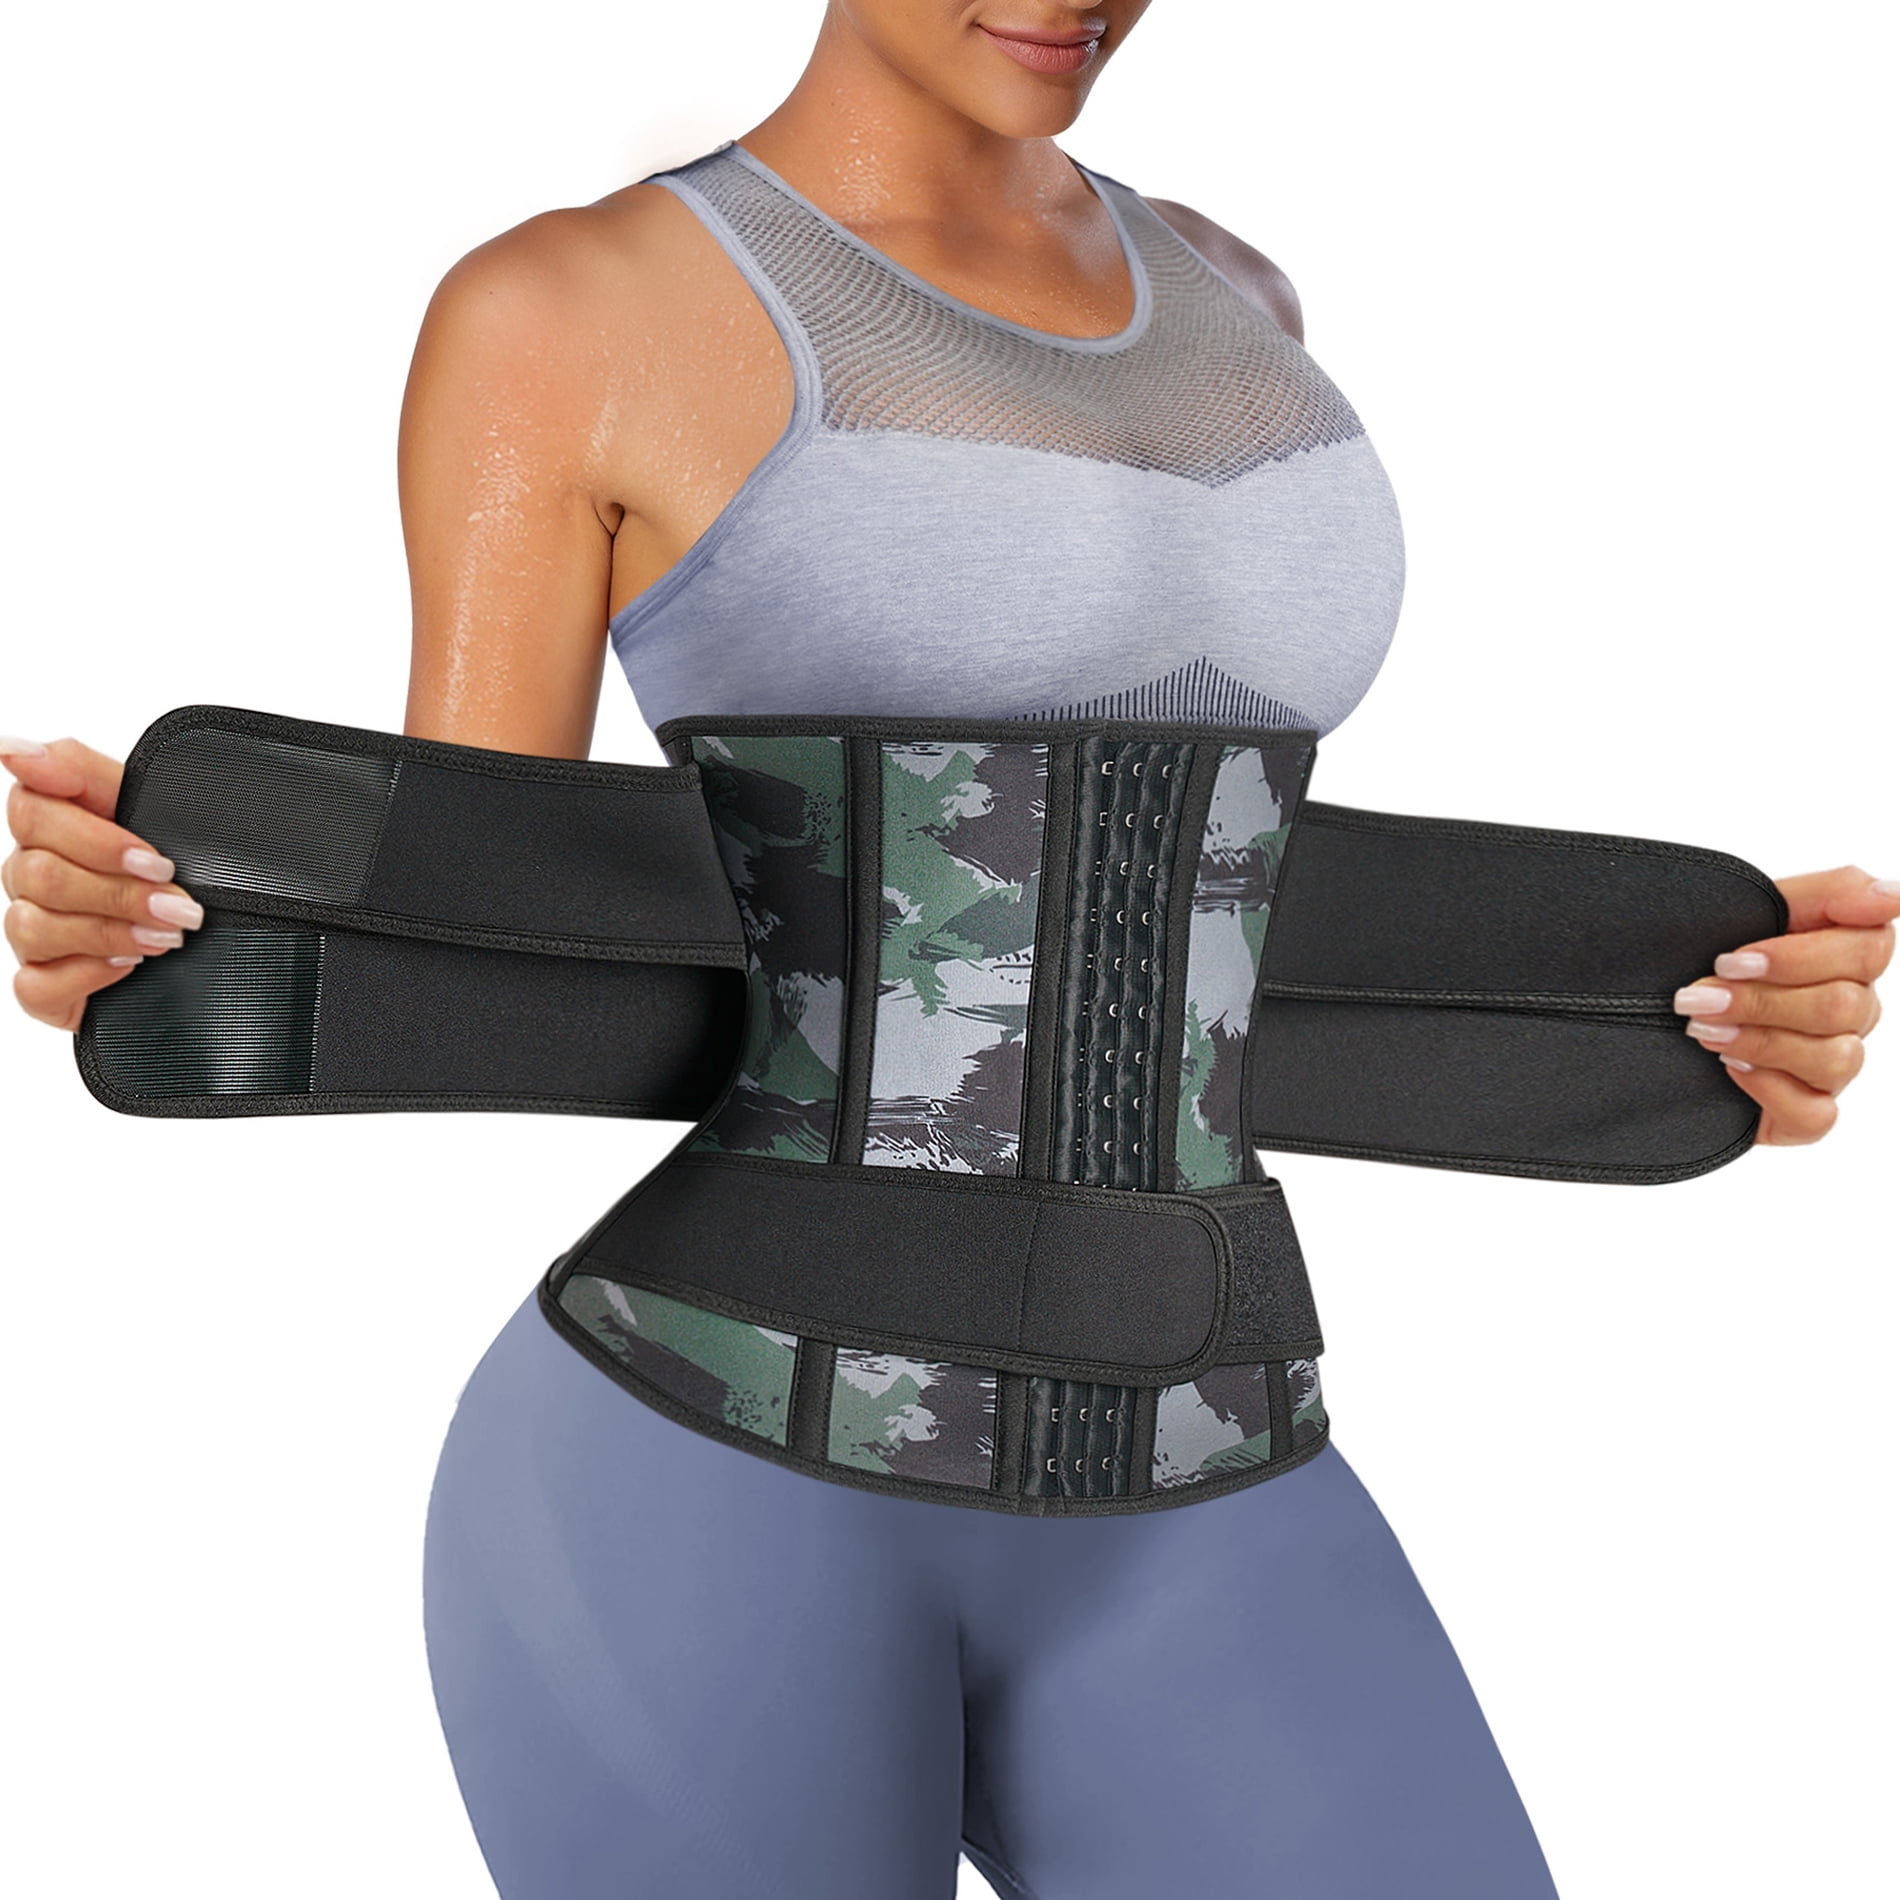 Women Waist Trainer Belt Slimming Body Weight Loss Girdle Sports Workout Belt 